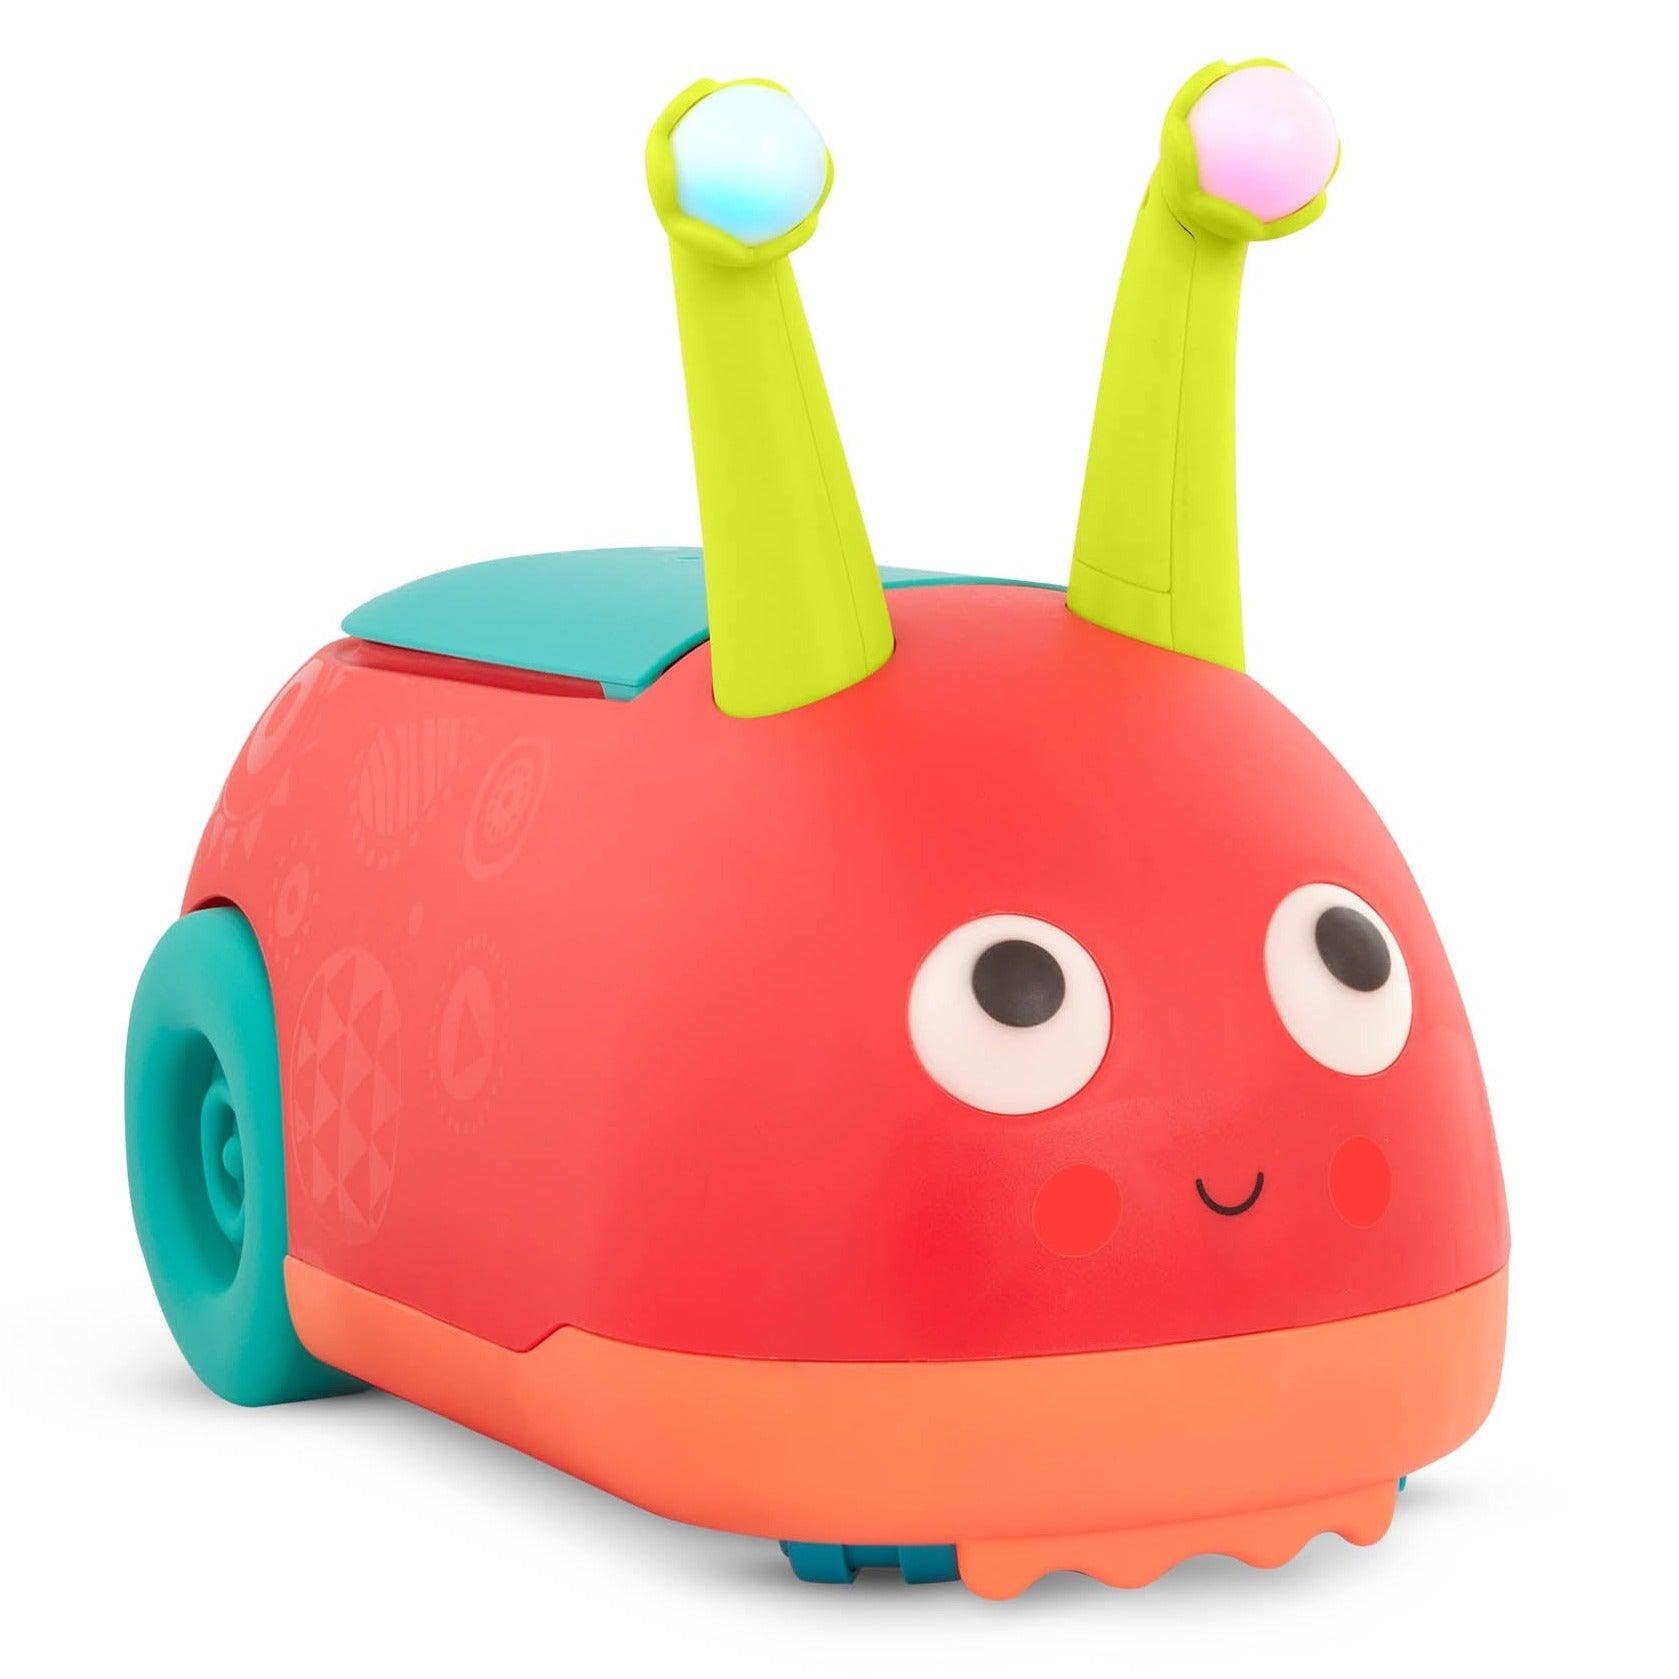 B.Toys: friendly ladybuggy ride